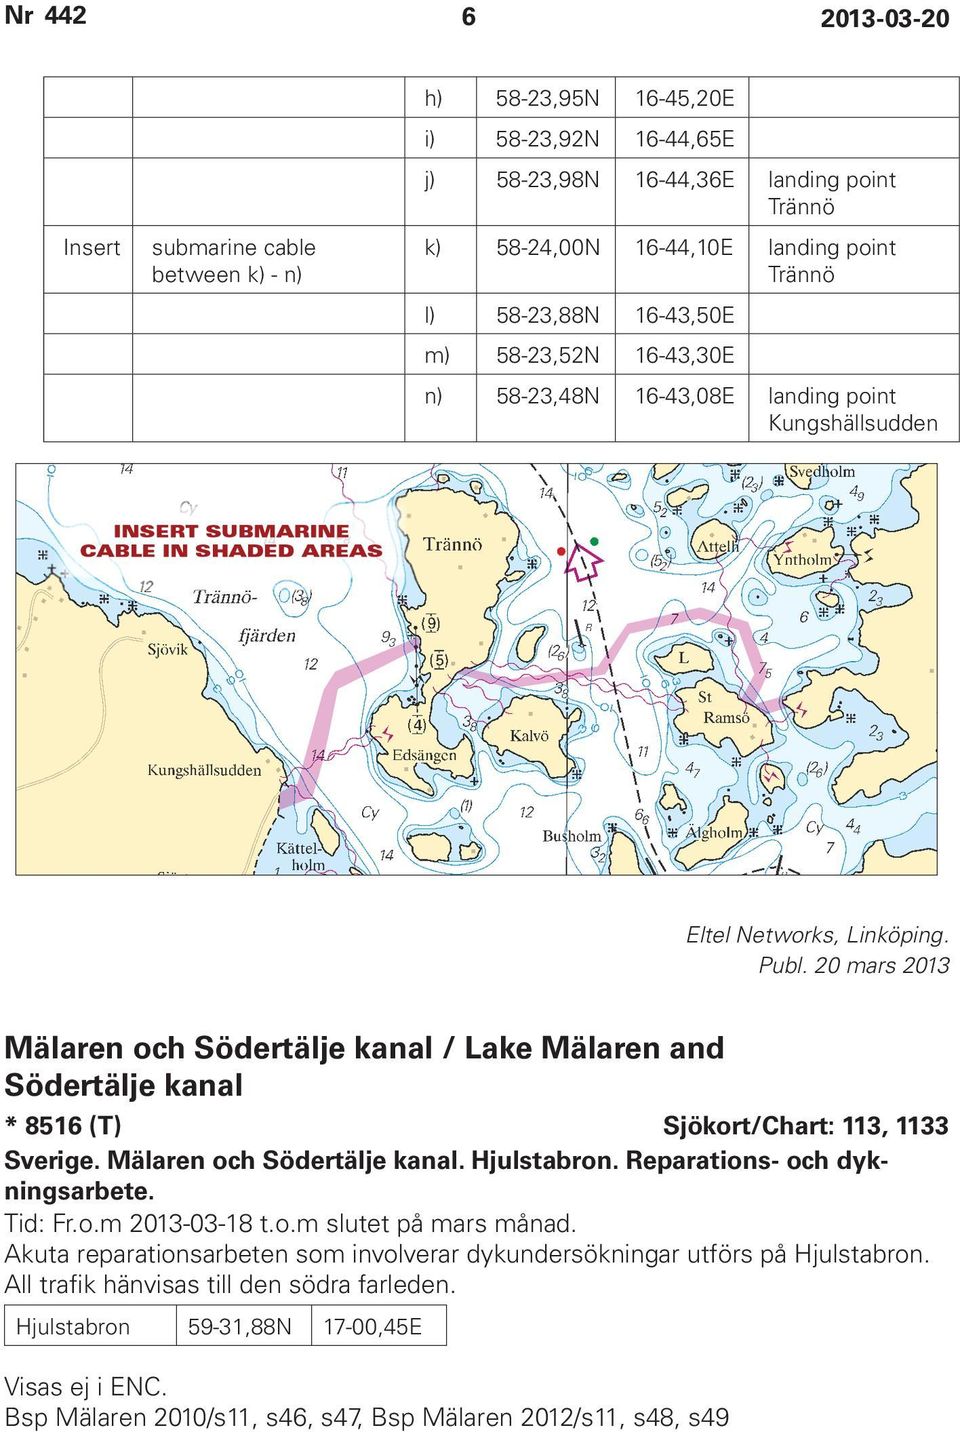 Mälaren och Södertälje kanal / Lake Mälaren and Södertälje kanal * 8516 (T) Sjökort/Chart: 113, 1133 Sverige. Mälaren och Södertälje kanal. Hjulstabron. Reparations- och dykningsarbete. Tid: Fr.